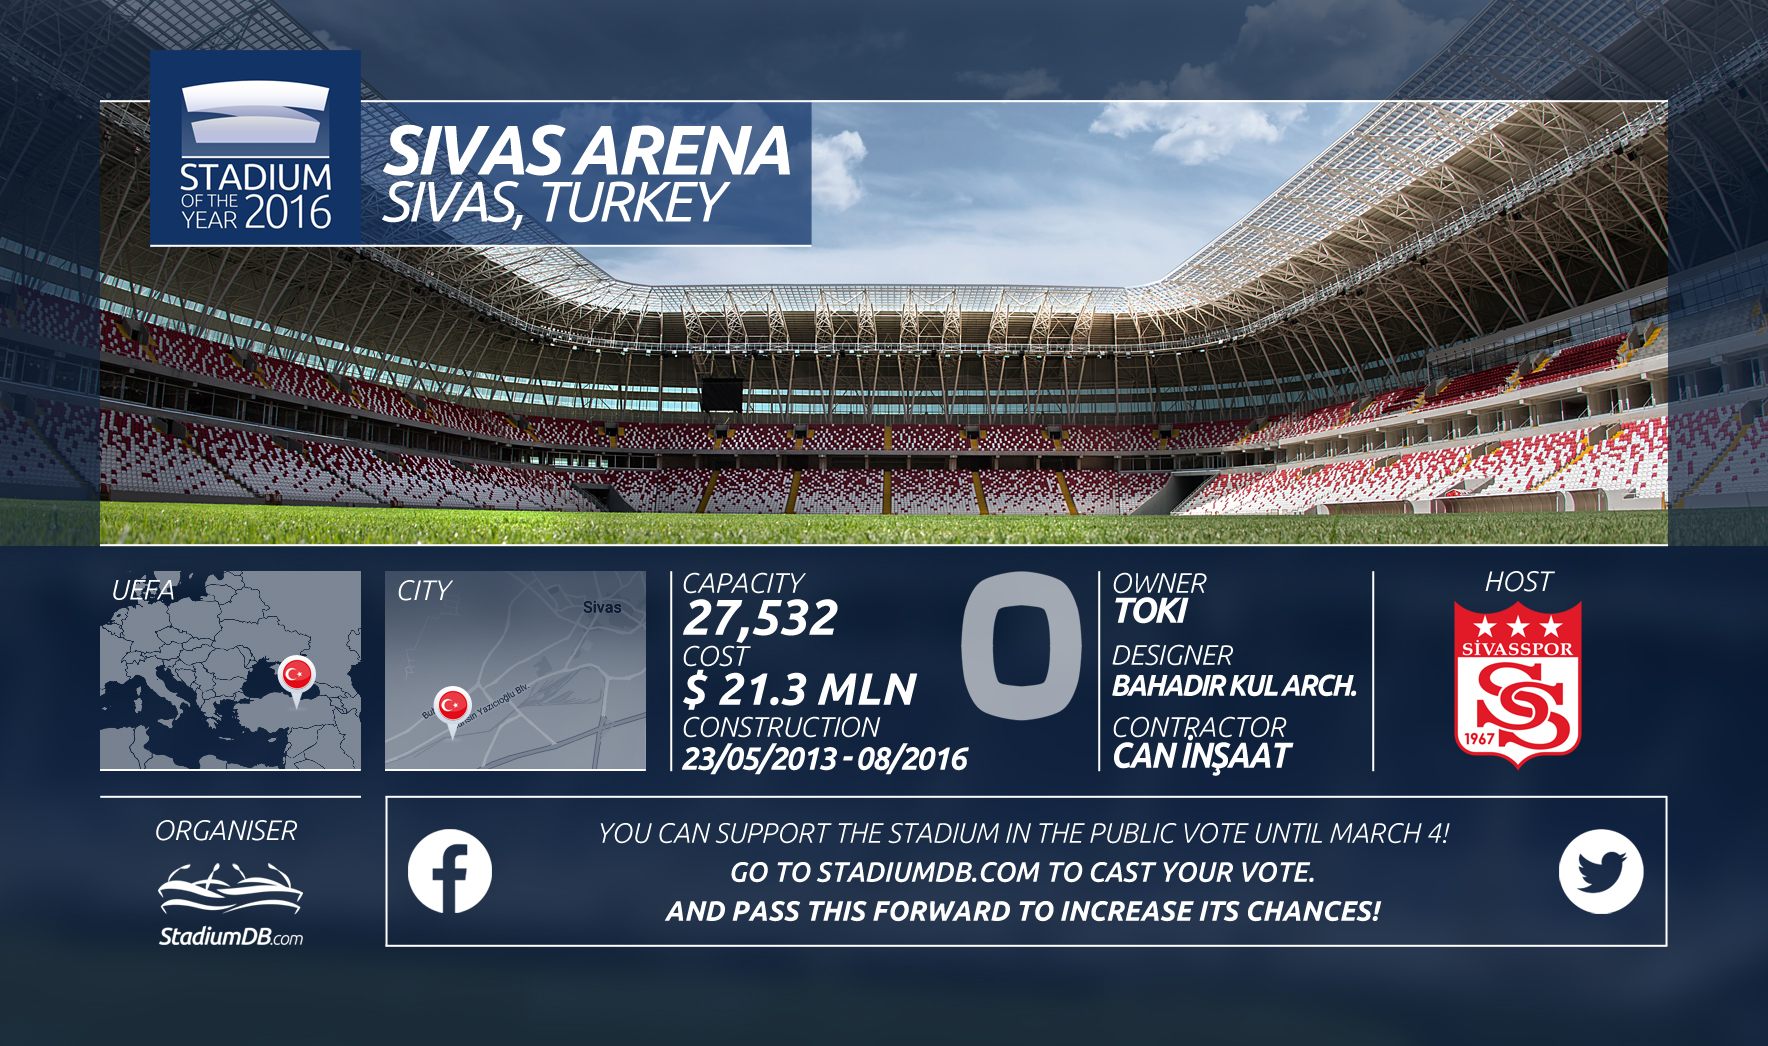 Sivas Arena